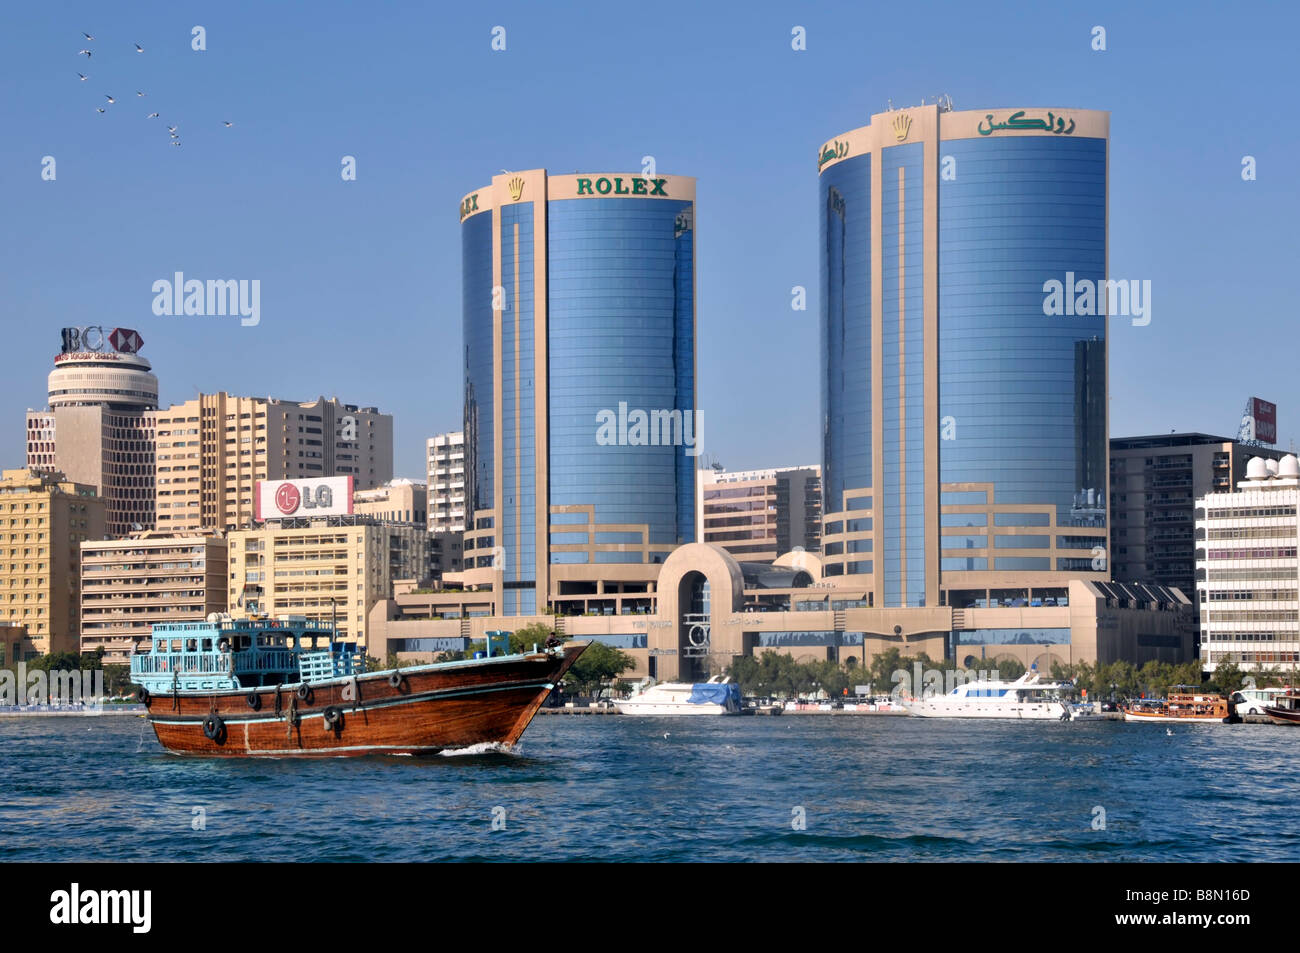 Dubai torri gemelle con la Rolex advert & edificio di moderna architettura urban skyline close up passando dhow barca sul Fiume Dubai EMIRATI ARABI UNITI Medio Oriente Asia Foto Stock